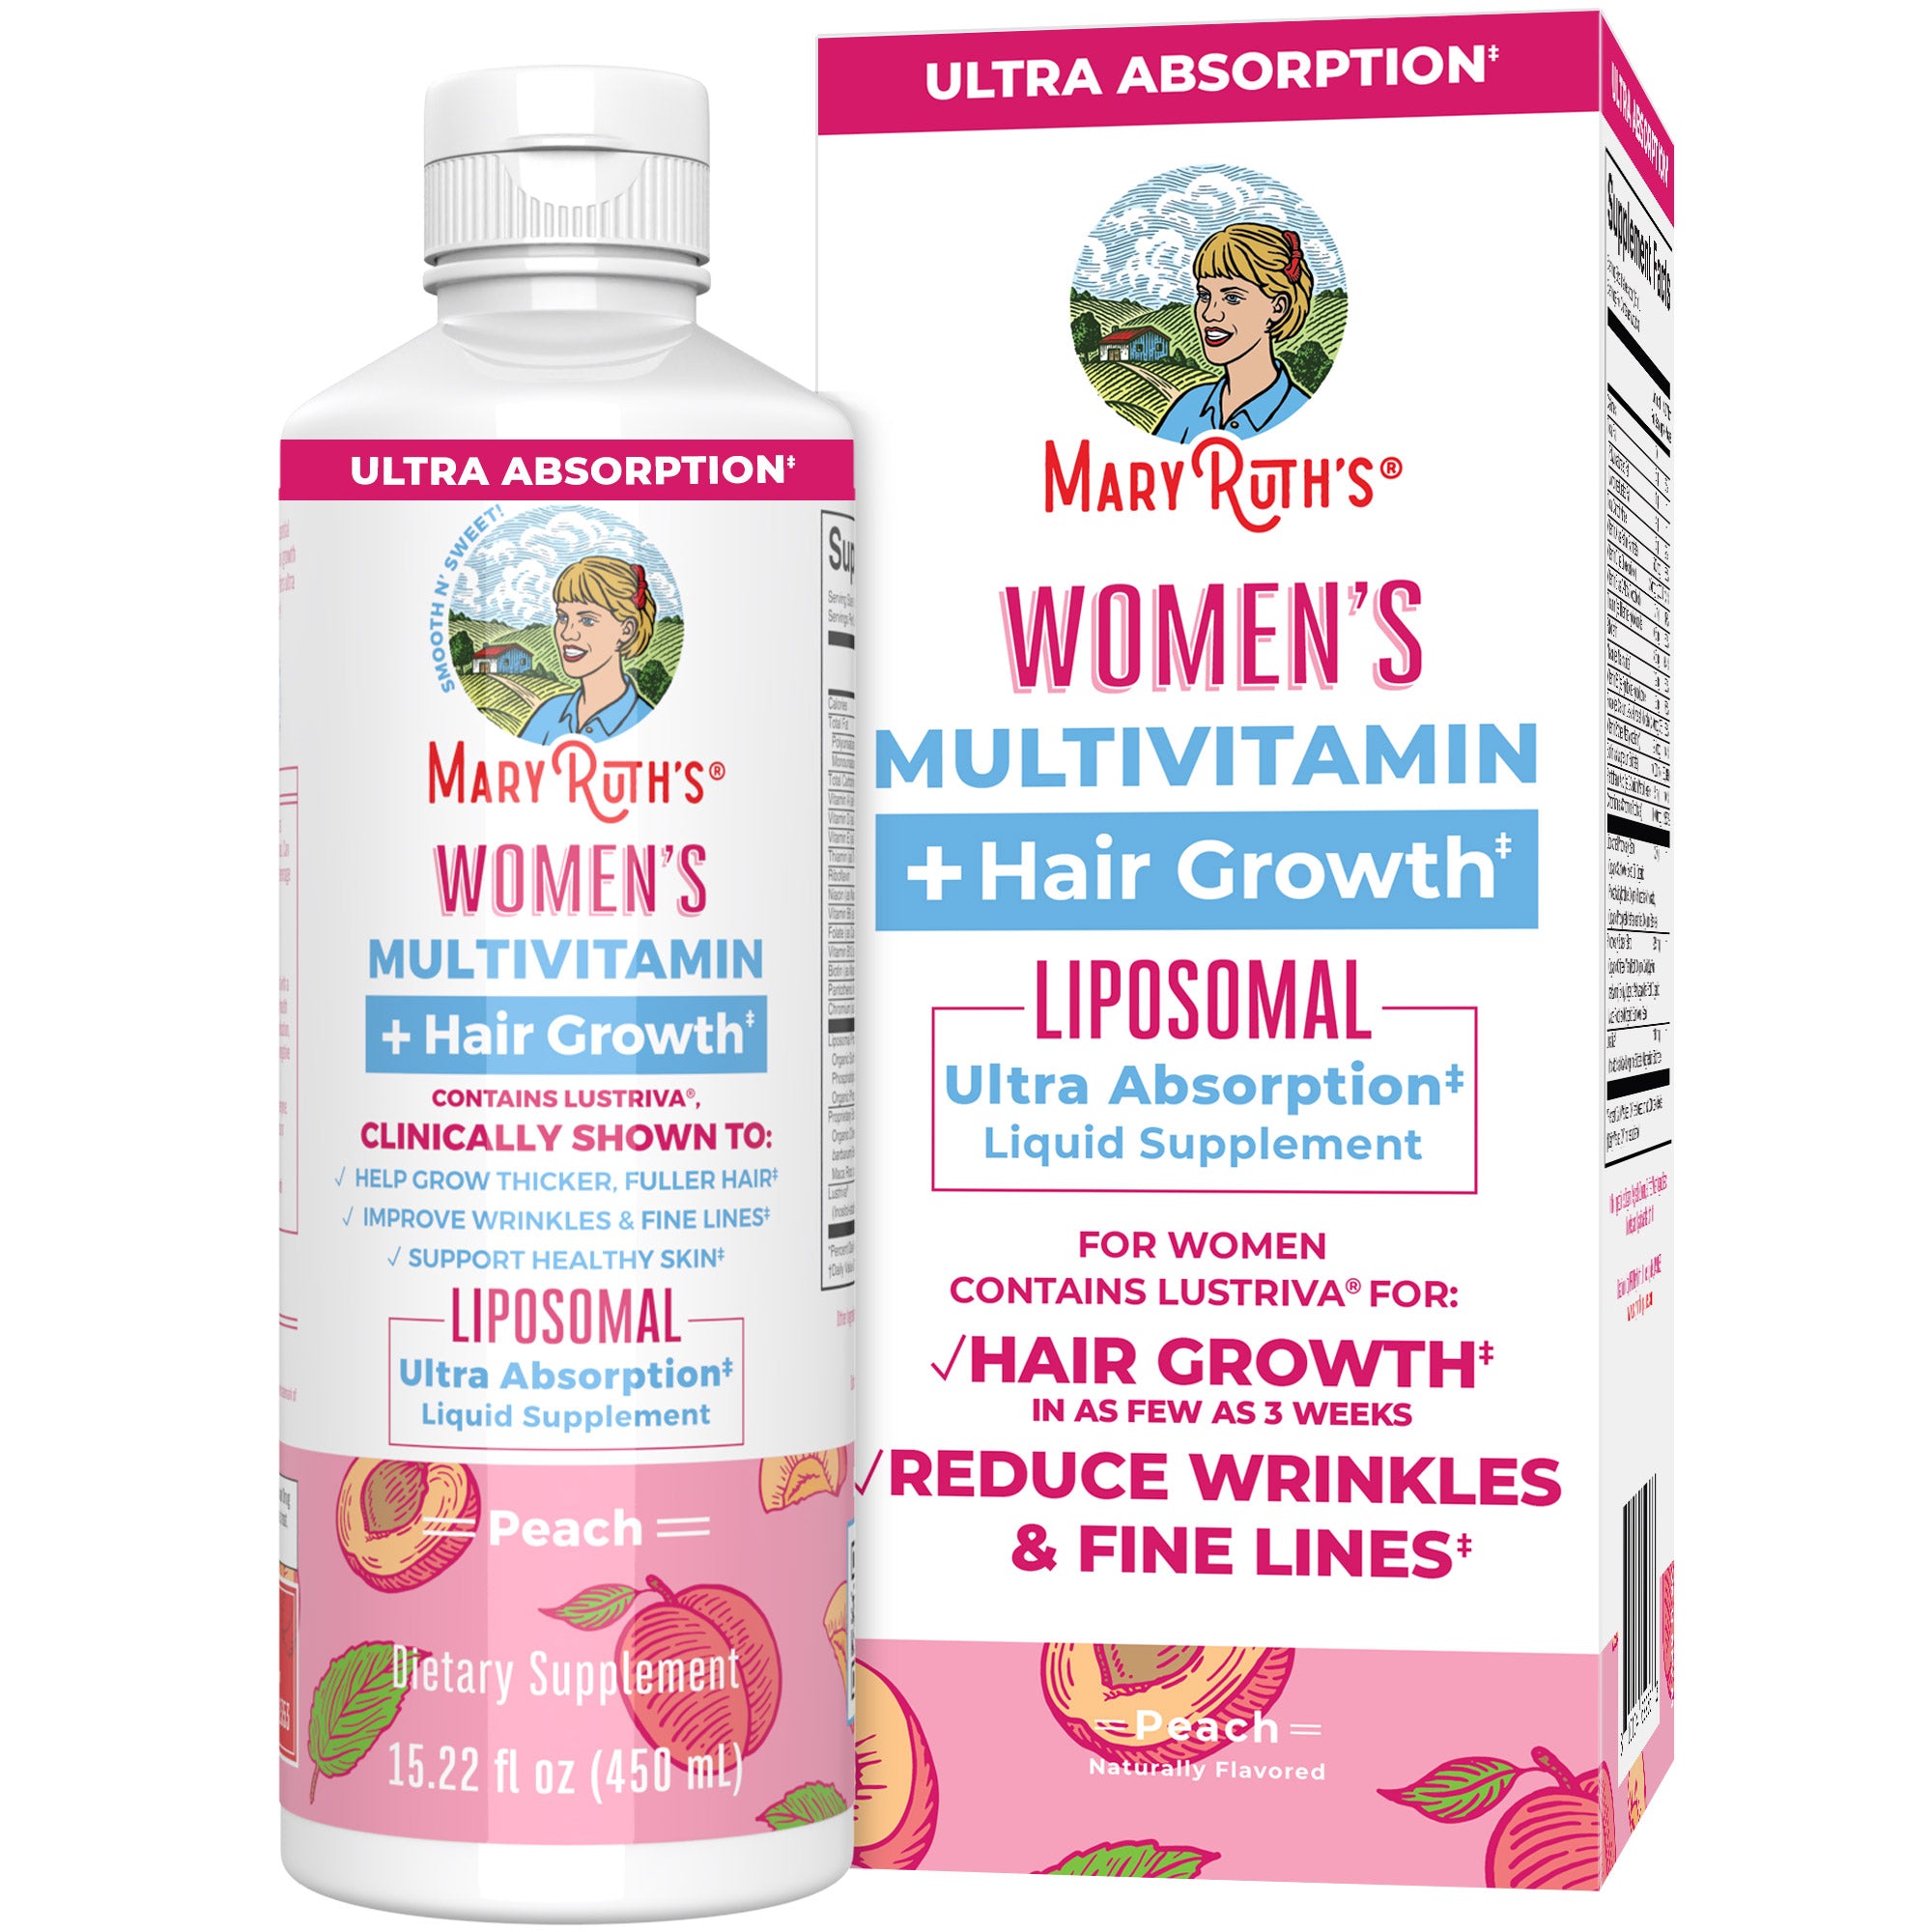 Women's Multivitamin + Lustriva Hair Growth Liposomal